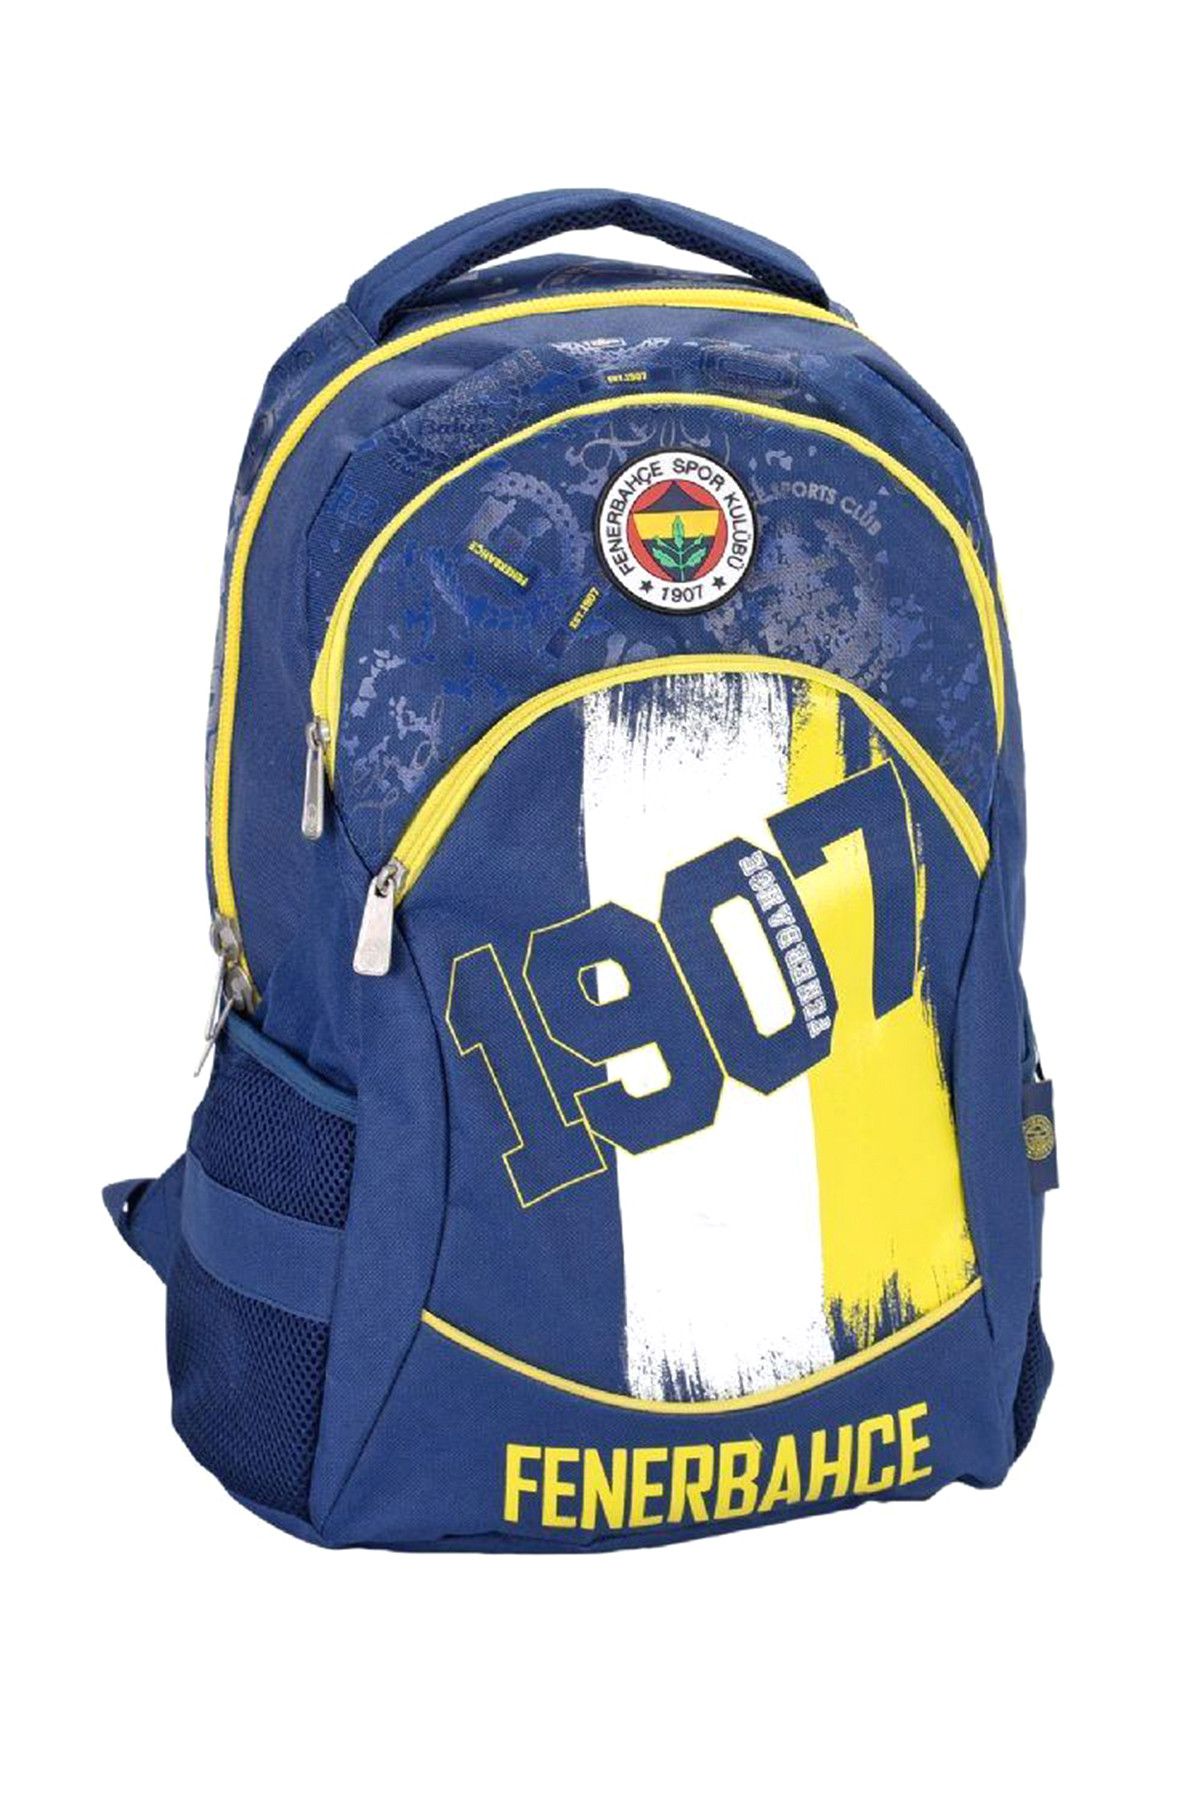 Fenerbahçe Fenerbahçe Sırt Çantası